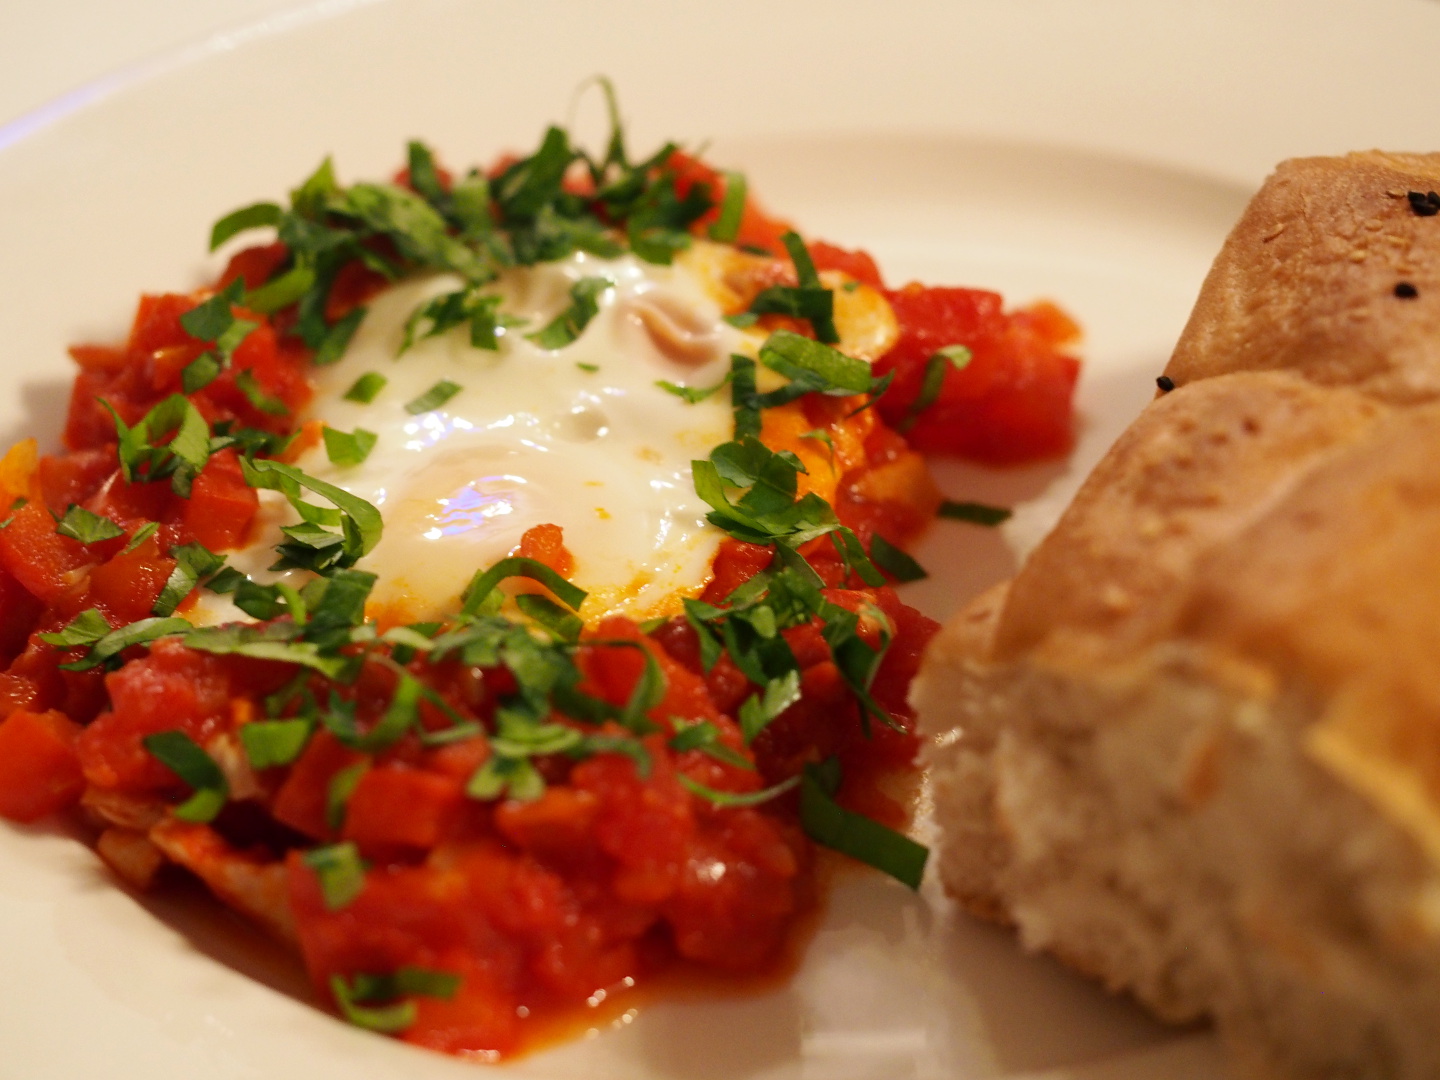 Eine Portion des Shakshuka auf einem Teller, inklusive dem poschiertem Ei in der Mitte der Tomaten-Paprika-Masse. Daneben liegt ein Stück Fladenbrot.